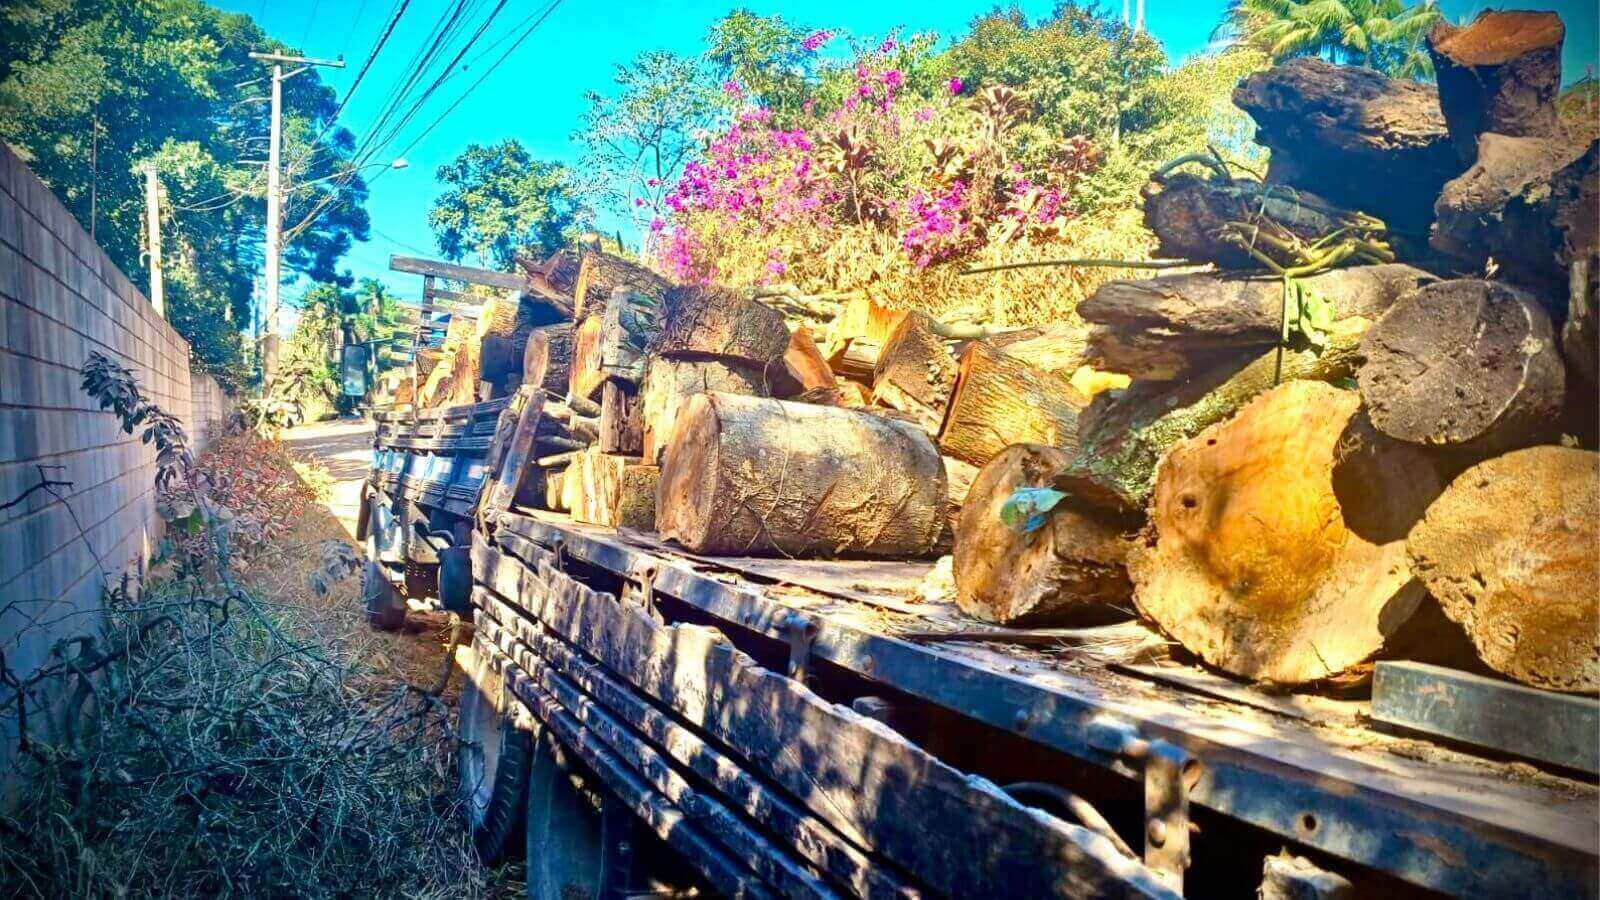 Caminhão com madeira proveniente de corte ilegal de árvores, flagrado pela Guarda de Várzea Paulista